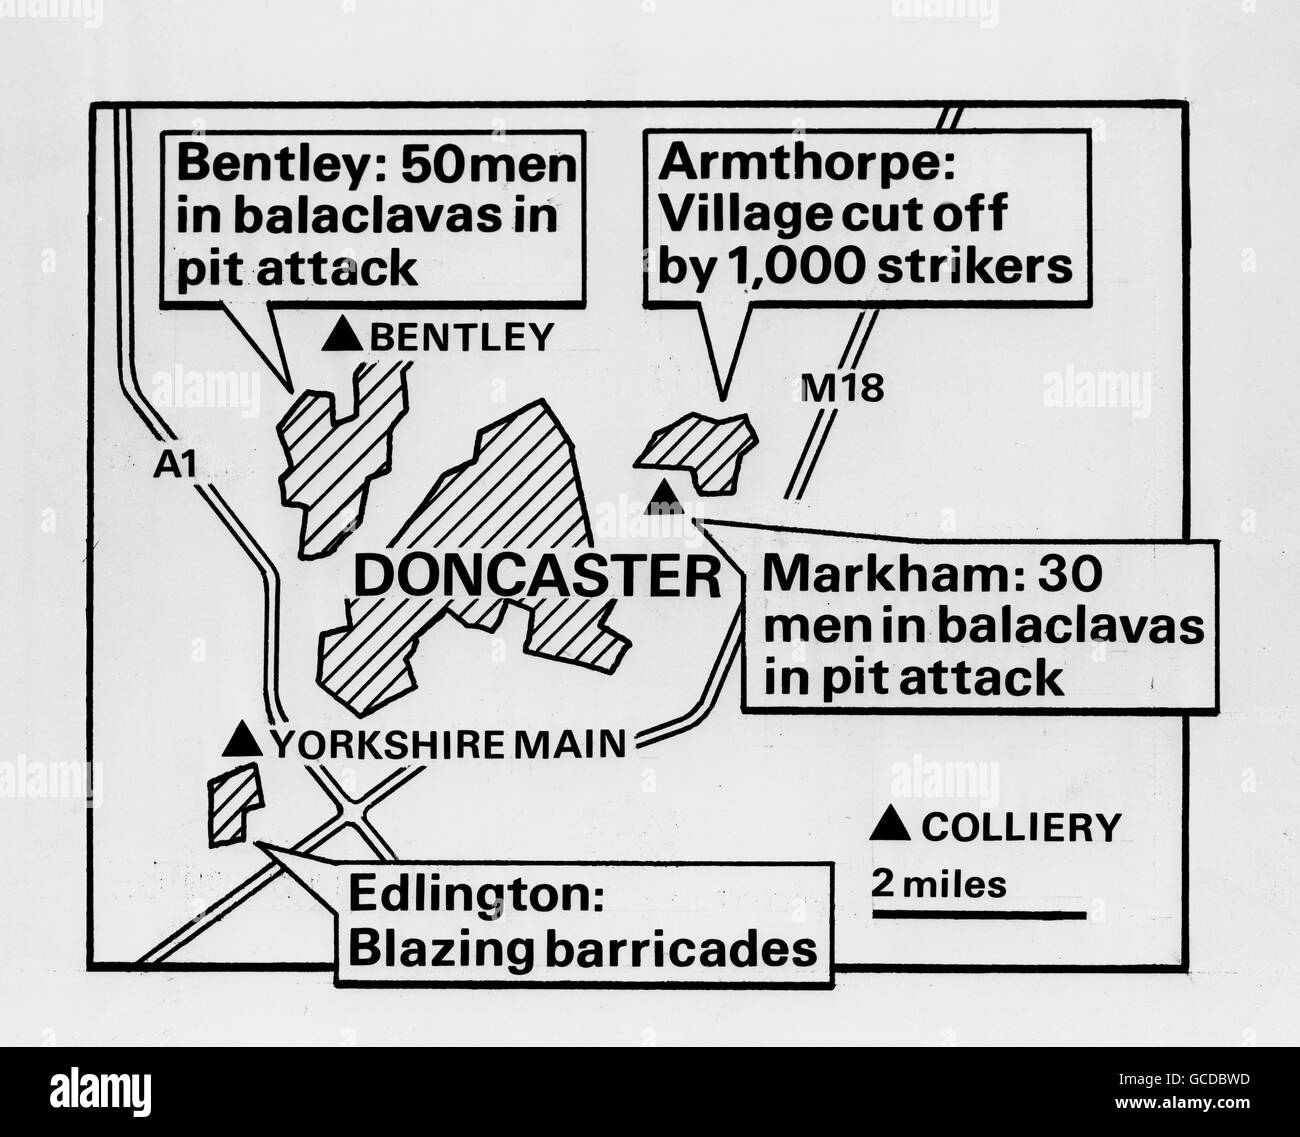 Eine Grafik der Pressevereinigung, die den Bergarbeiterstreik in der Region Doncaster zeigt. Bei Bentley zerschlugen 50 Männer in Balaclavas die Ausrüstung auf der Kolonie, Armthorpe wurde von 1,000 Streikenden abgeschnitten, im Markham Main Colliery zerschlugen 30 Männer in Balaclavas die Ausrüstung und Edlington hatte flammende Barrikaden. Stockfoto